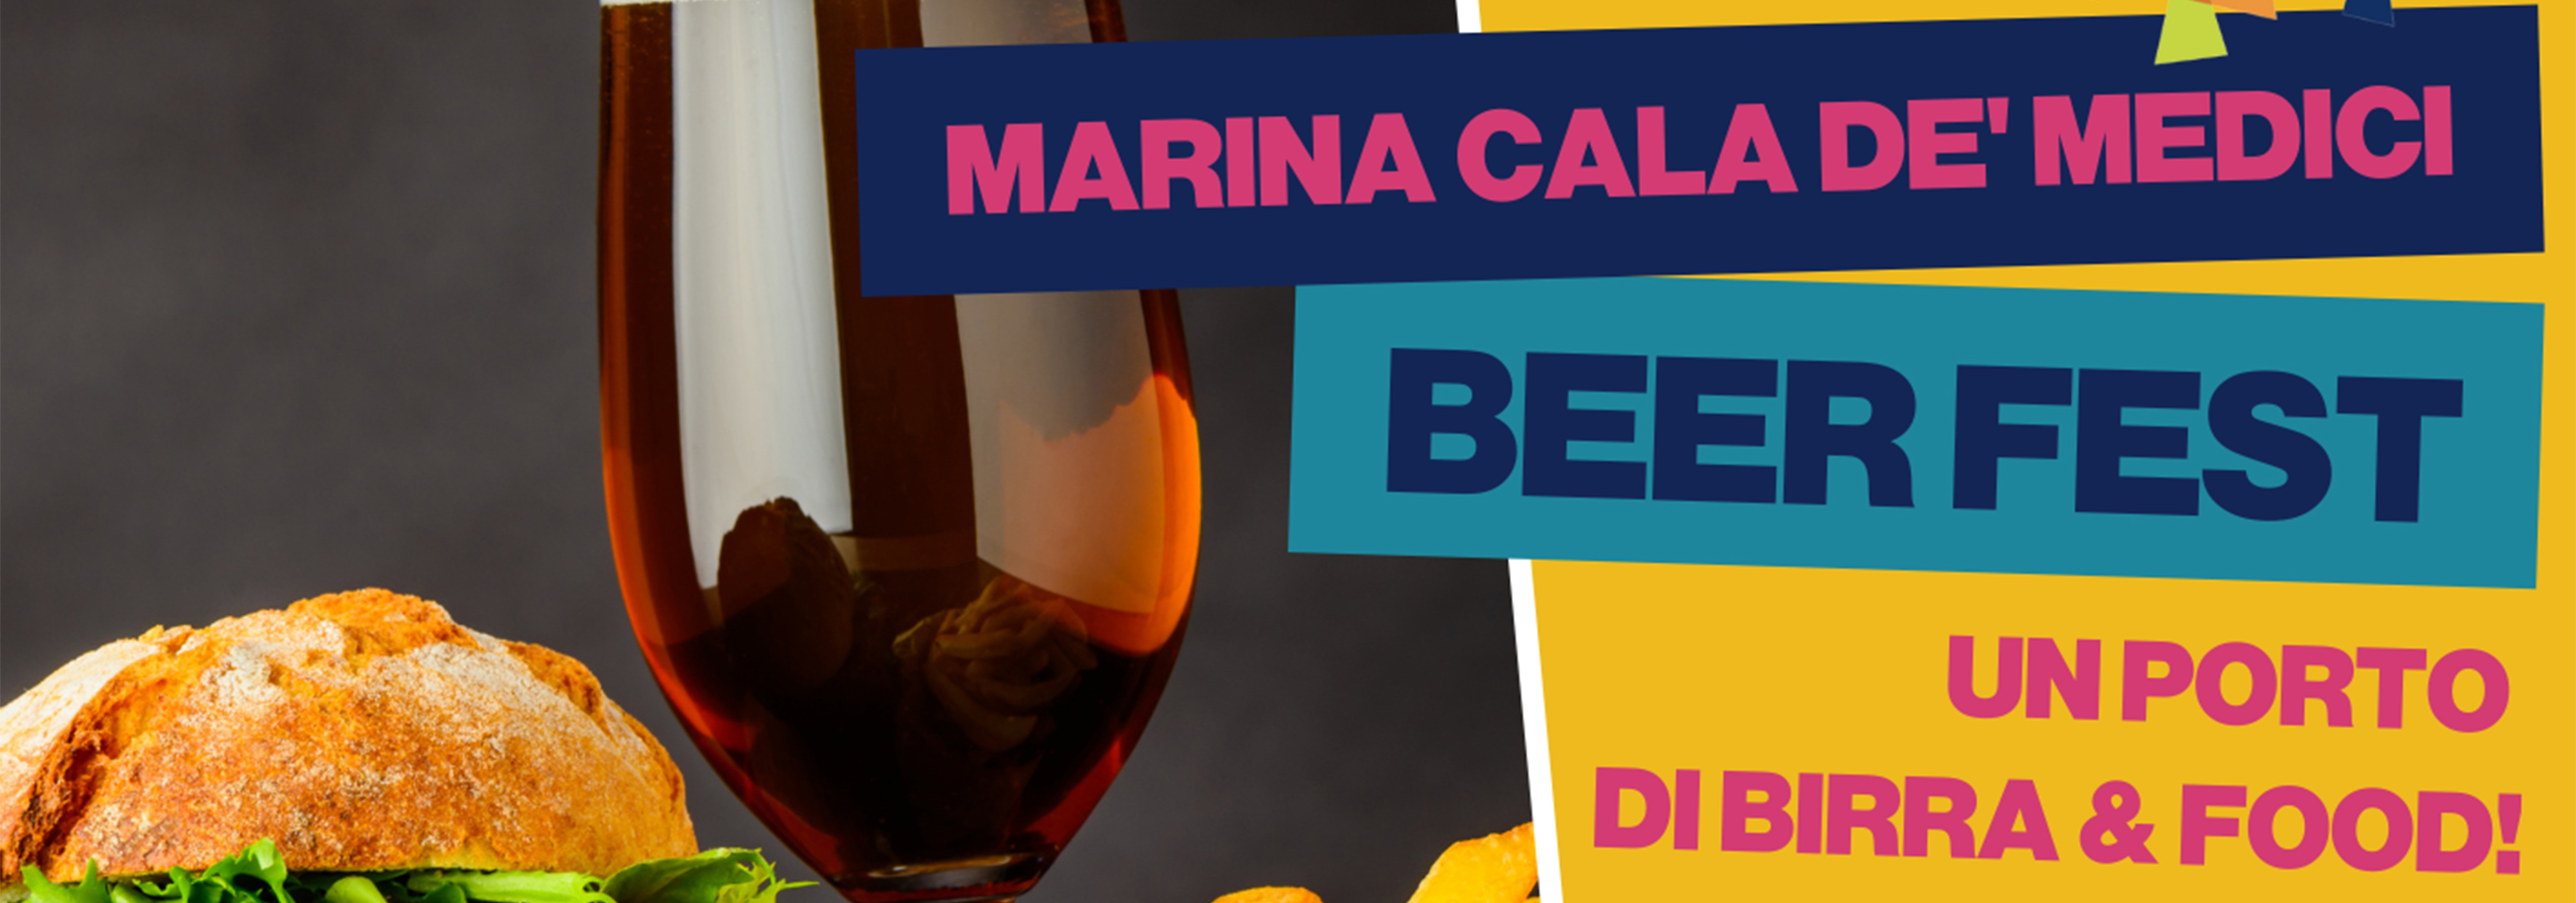 Marina Cala de' Medici Beer Fest